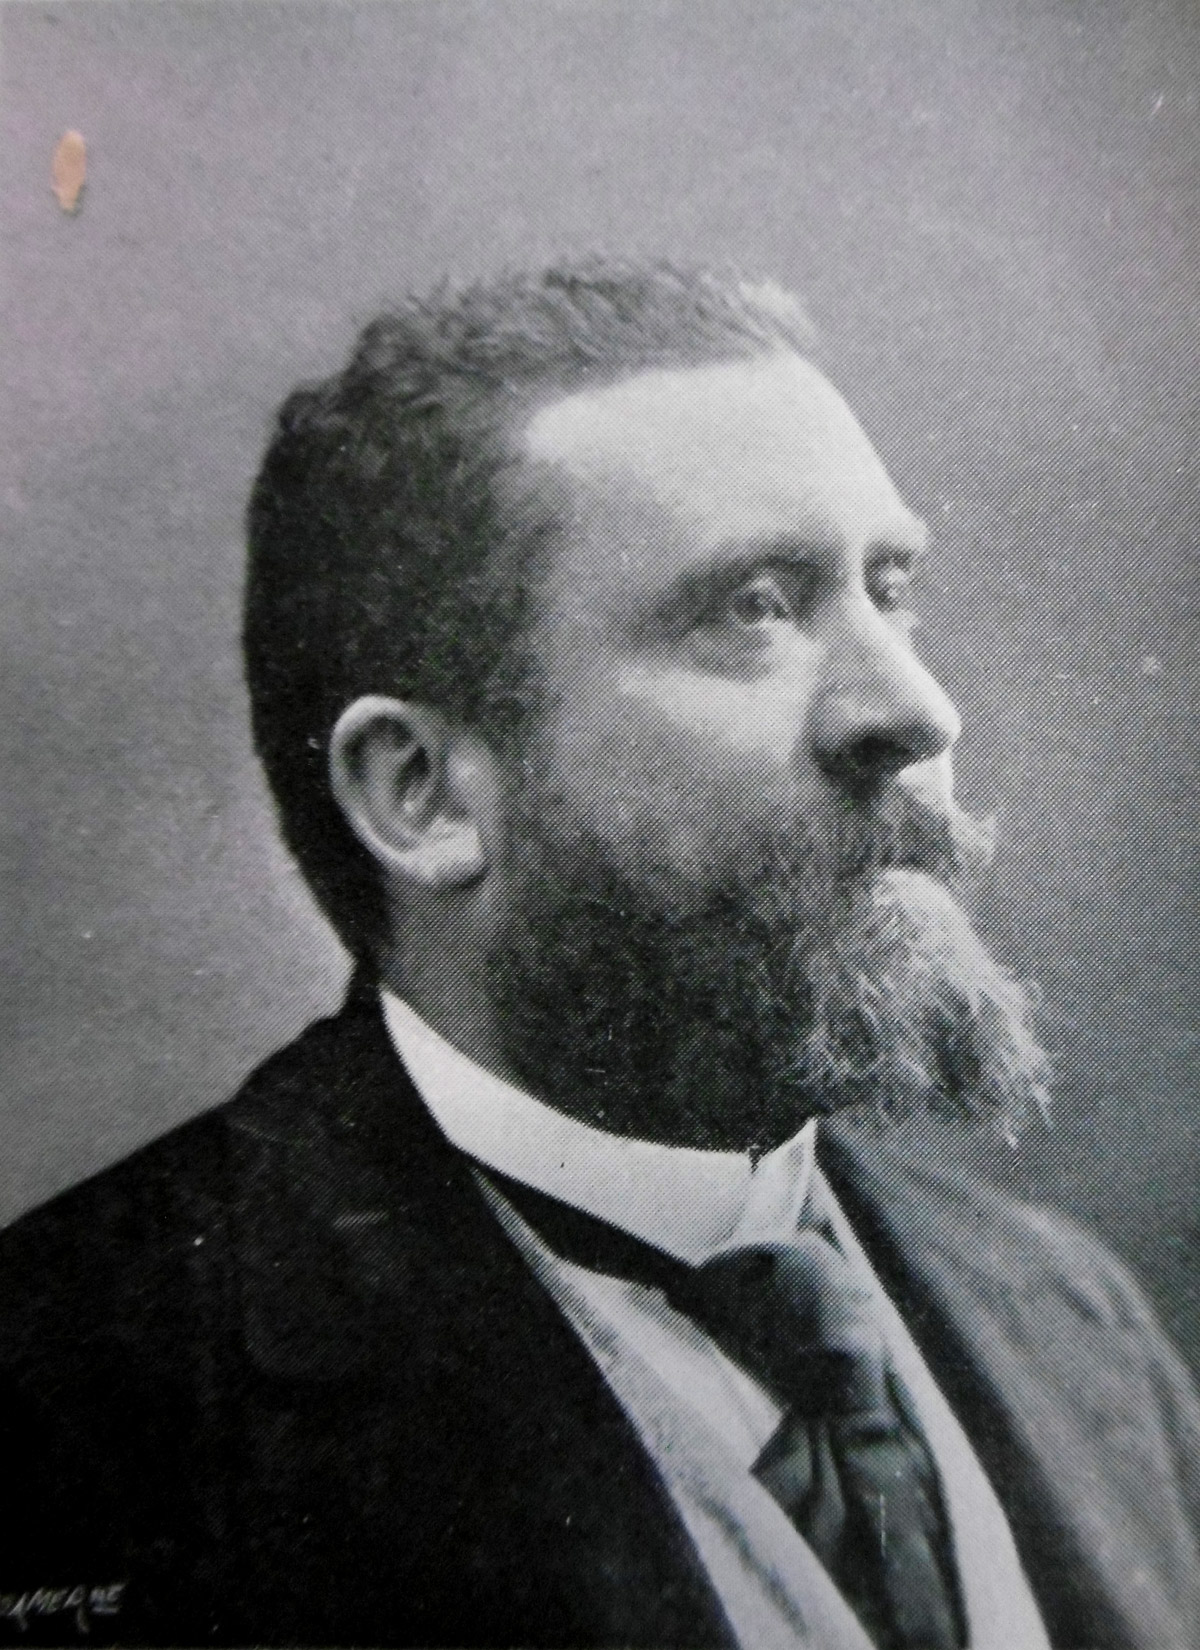 Portrait de Jean Jaurès in Les défenseurs de la justice : affaire Dreyfus, 1899